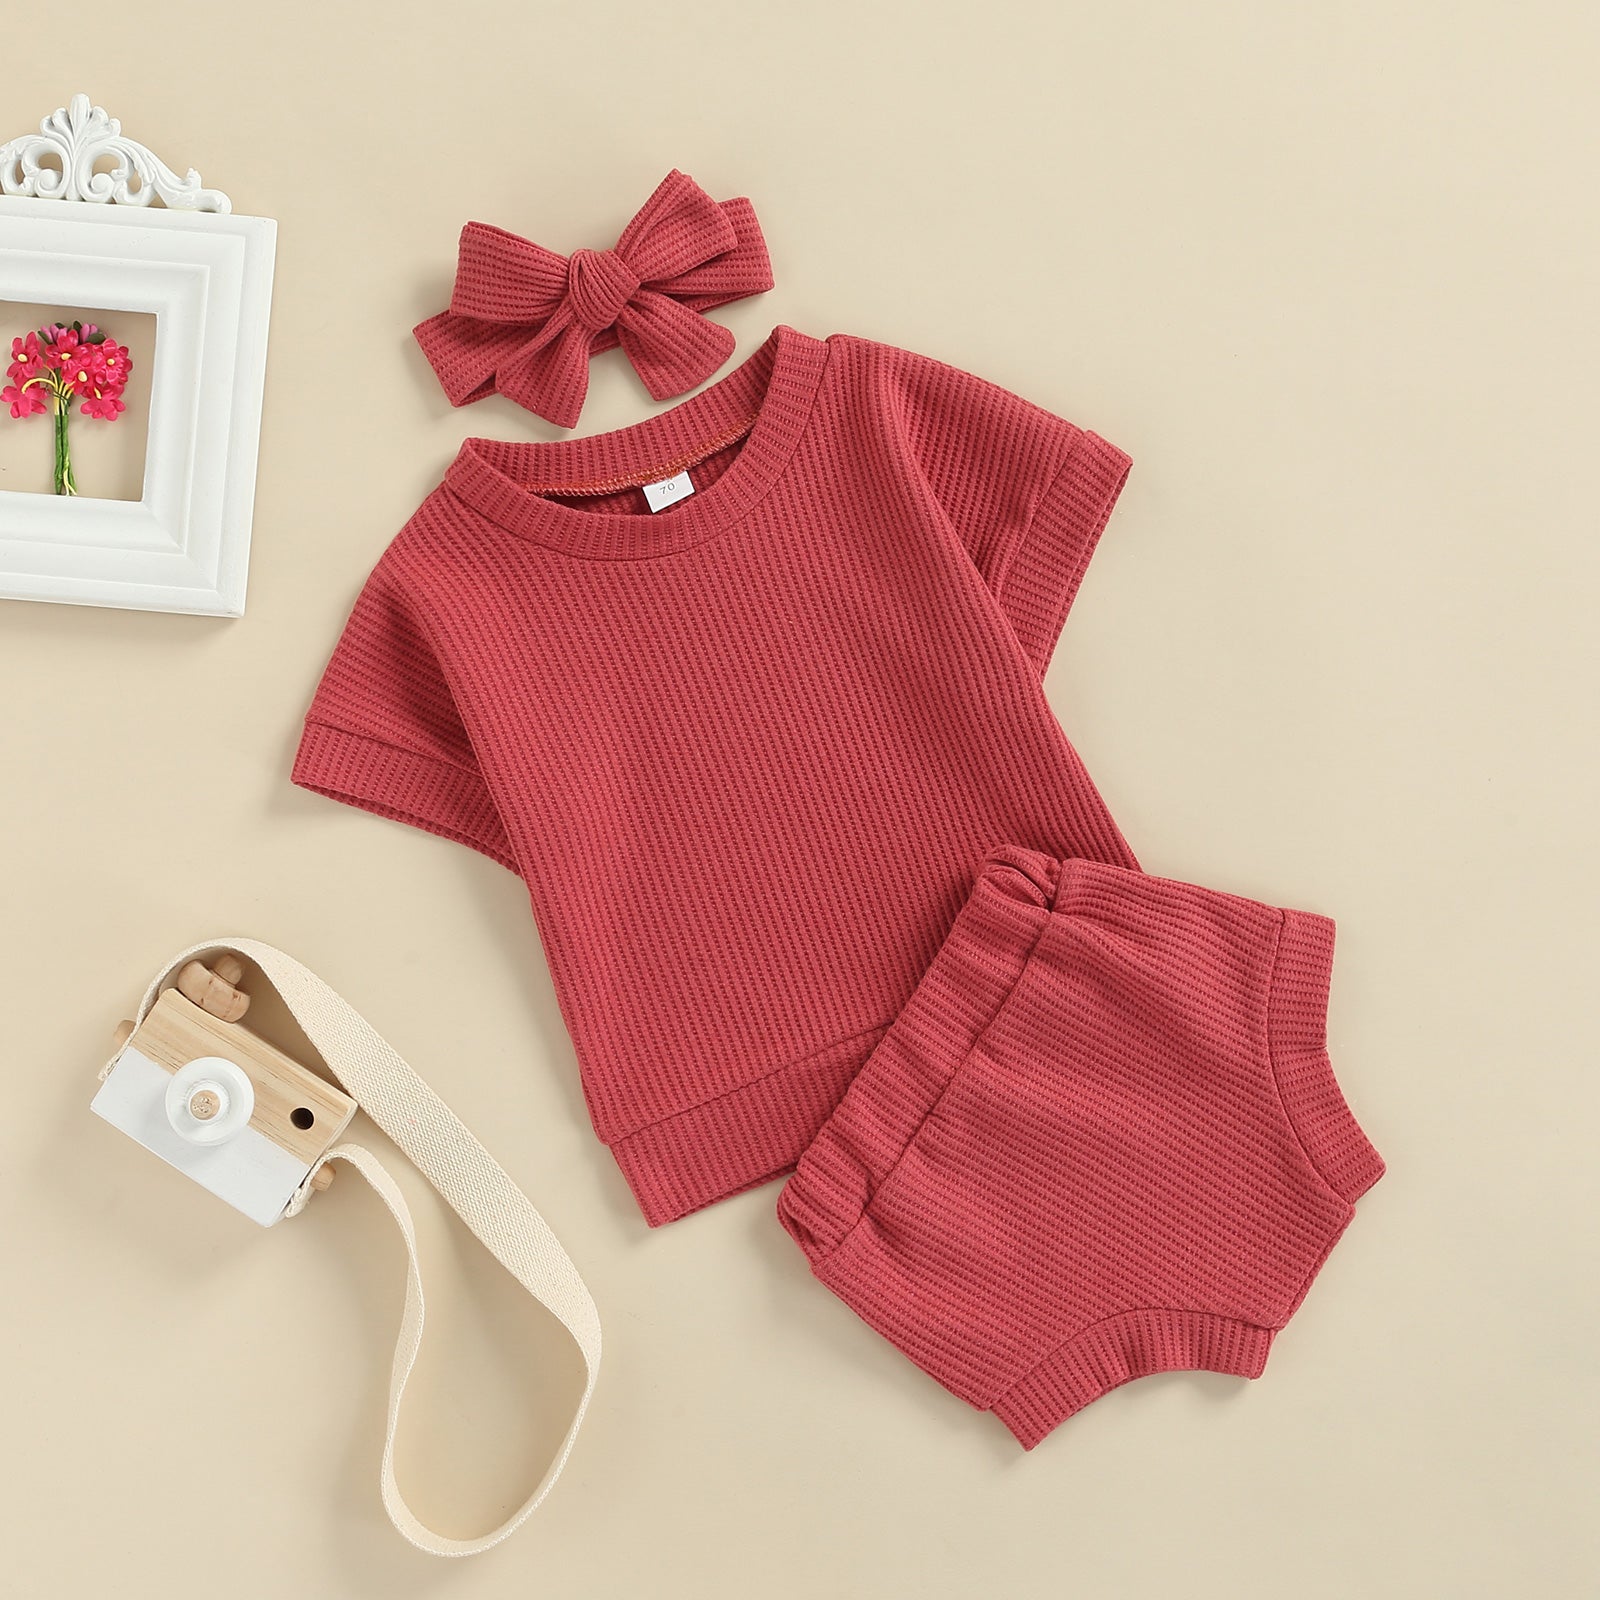 Conjunto Infantil Canelado Calcinha + Blusa + Laço conjunto Loja Click Certo Vermelho 0-6 meses 